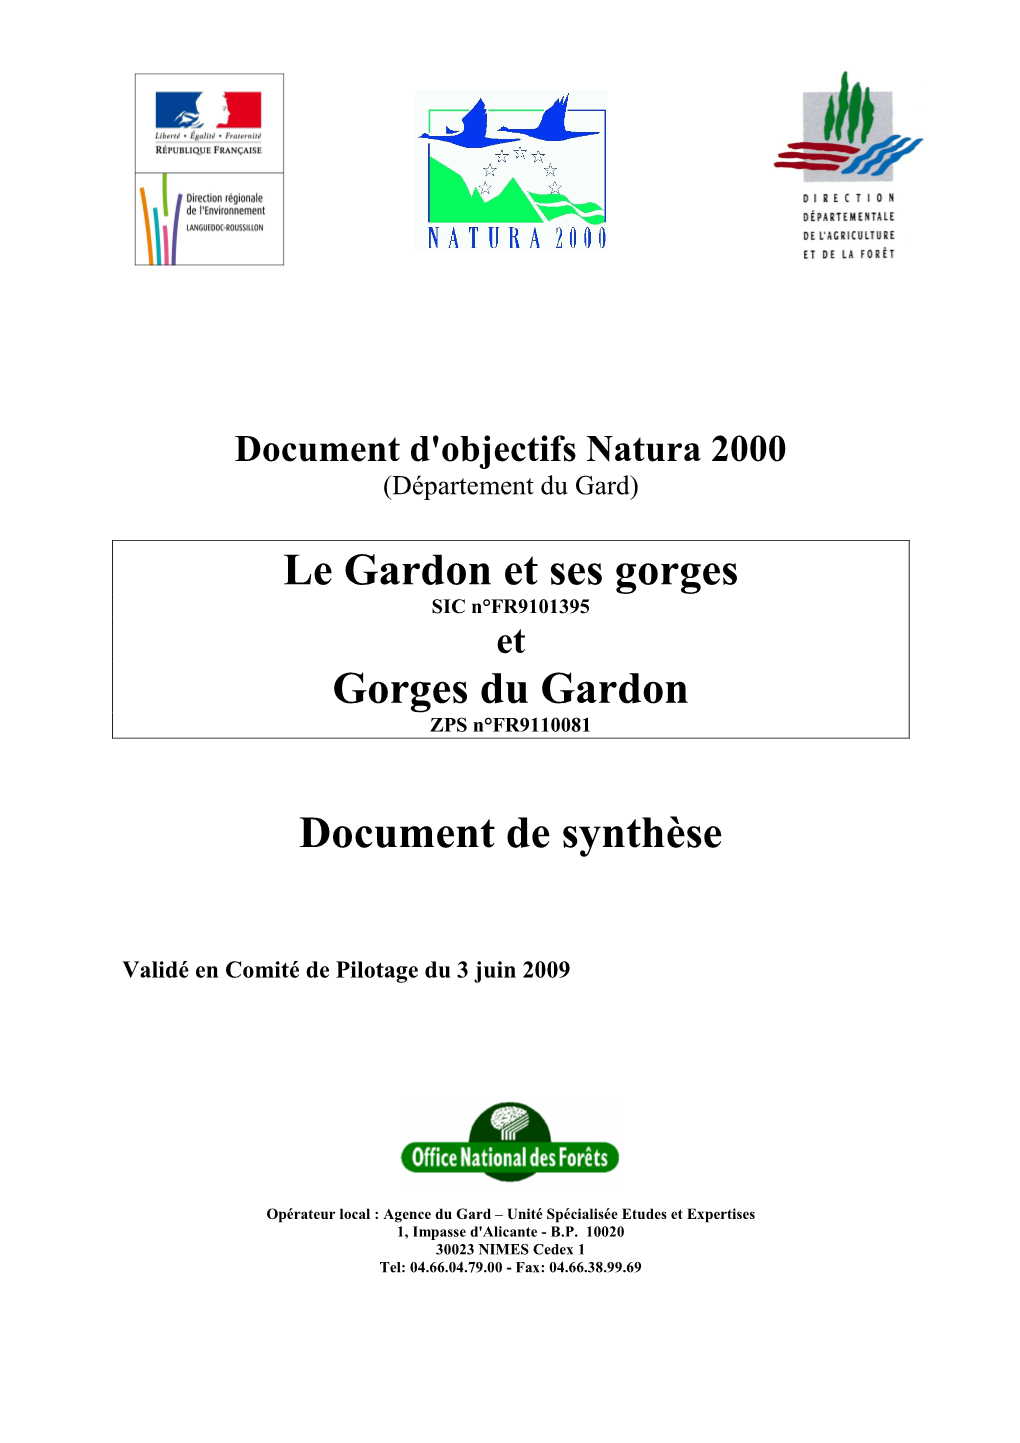 Document D'objectifs Natura 2000 "Les Gorges Du Gardon"